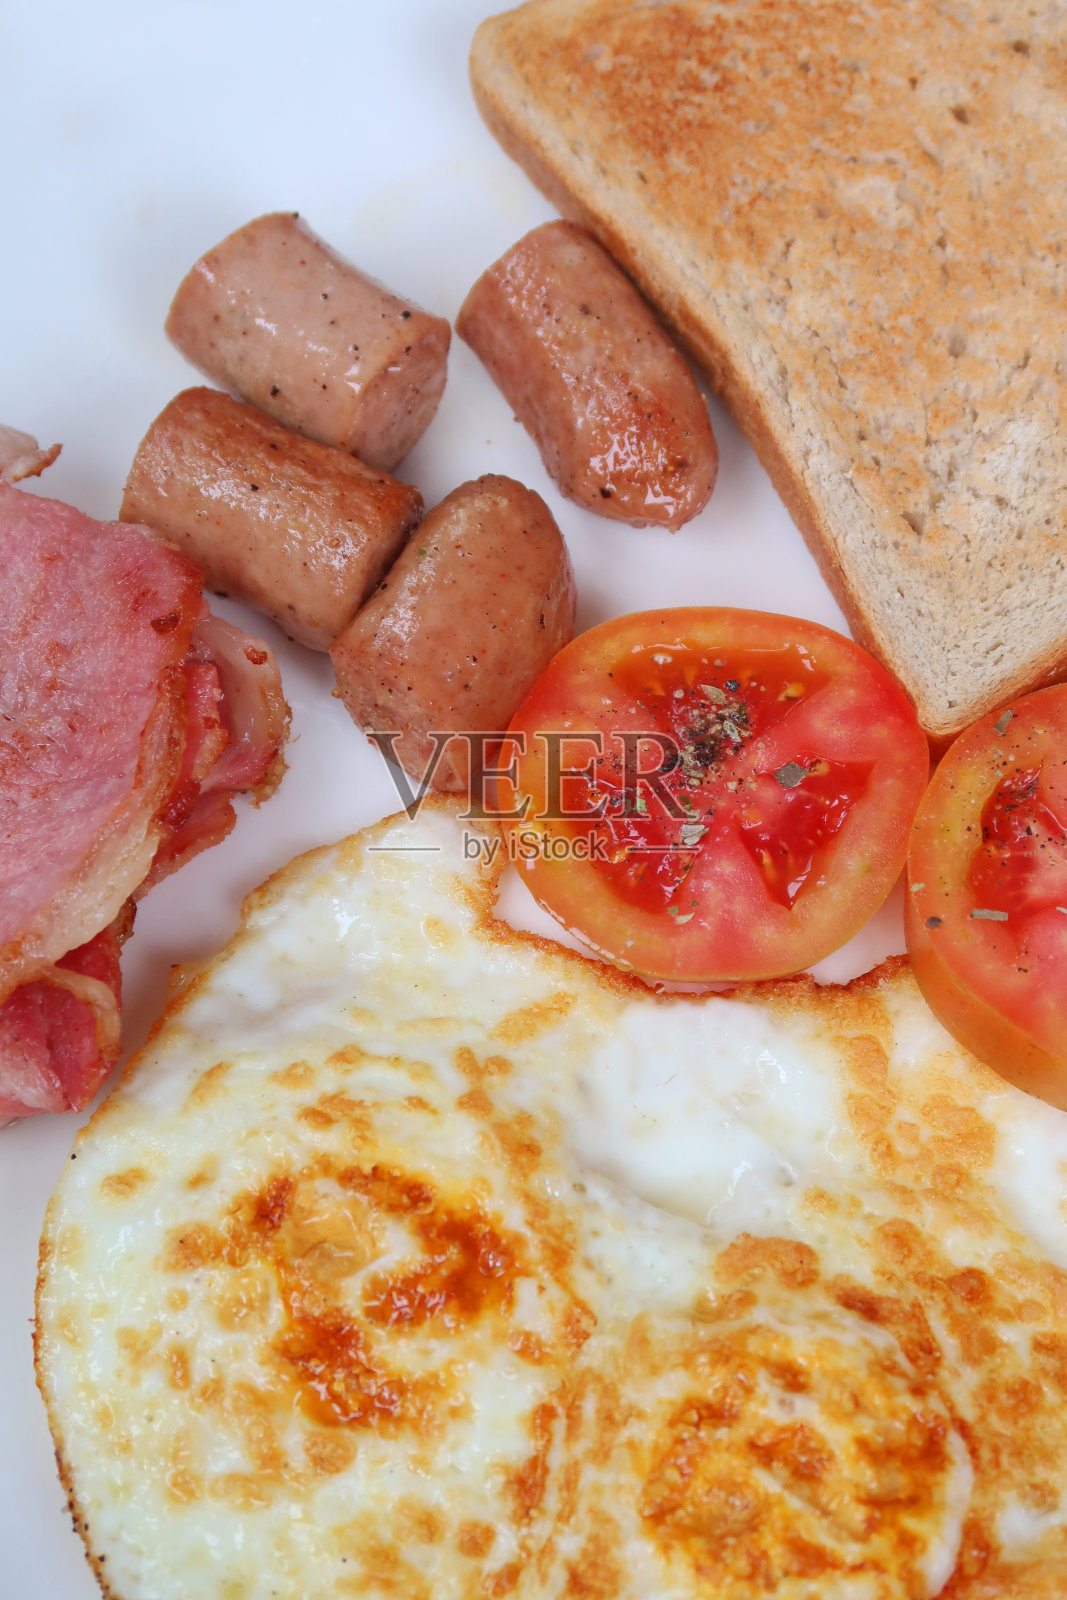 油炸早餐的形象/炸鸡香肠，熏肉片，煎蛋，西红柿和白烤面包，俯瞰照片摄影图片